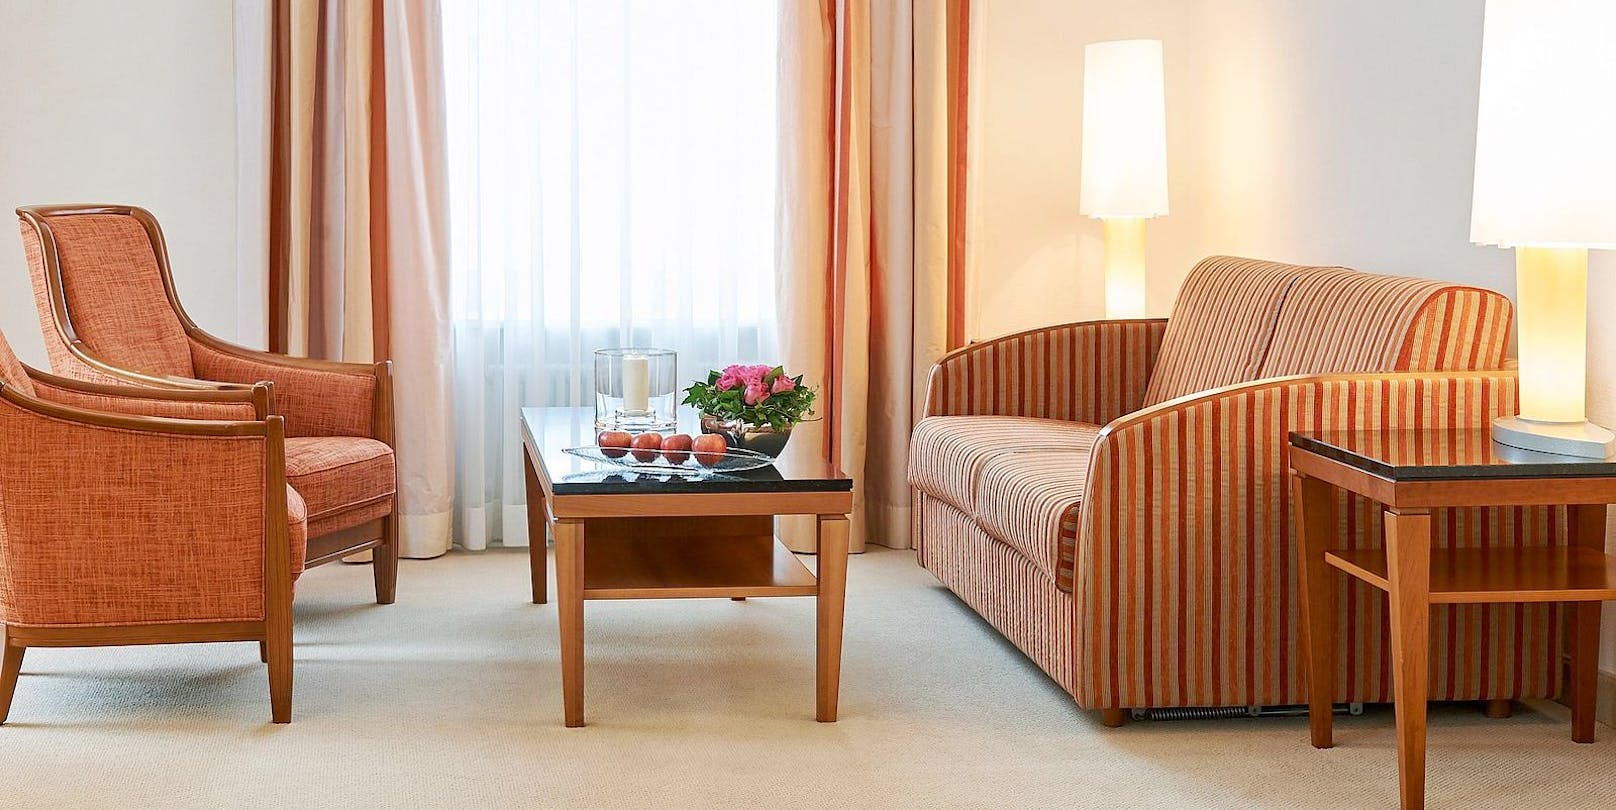 Die Suite im Cresta Palace bekommt man für die gesamte Witersaison für umgerechnet rund 50.000 Euro.